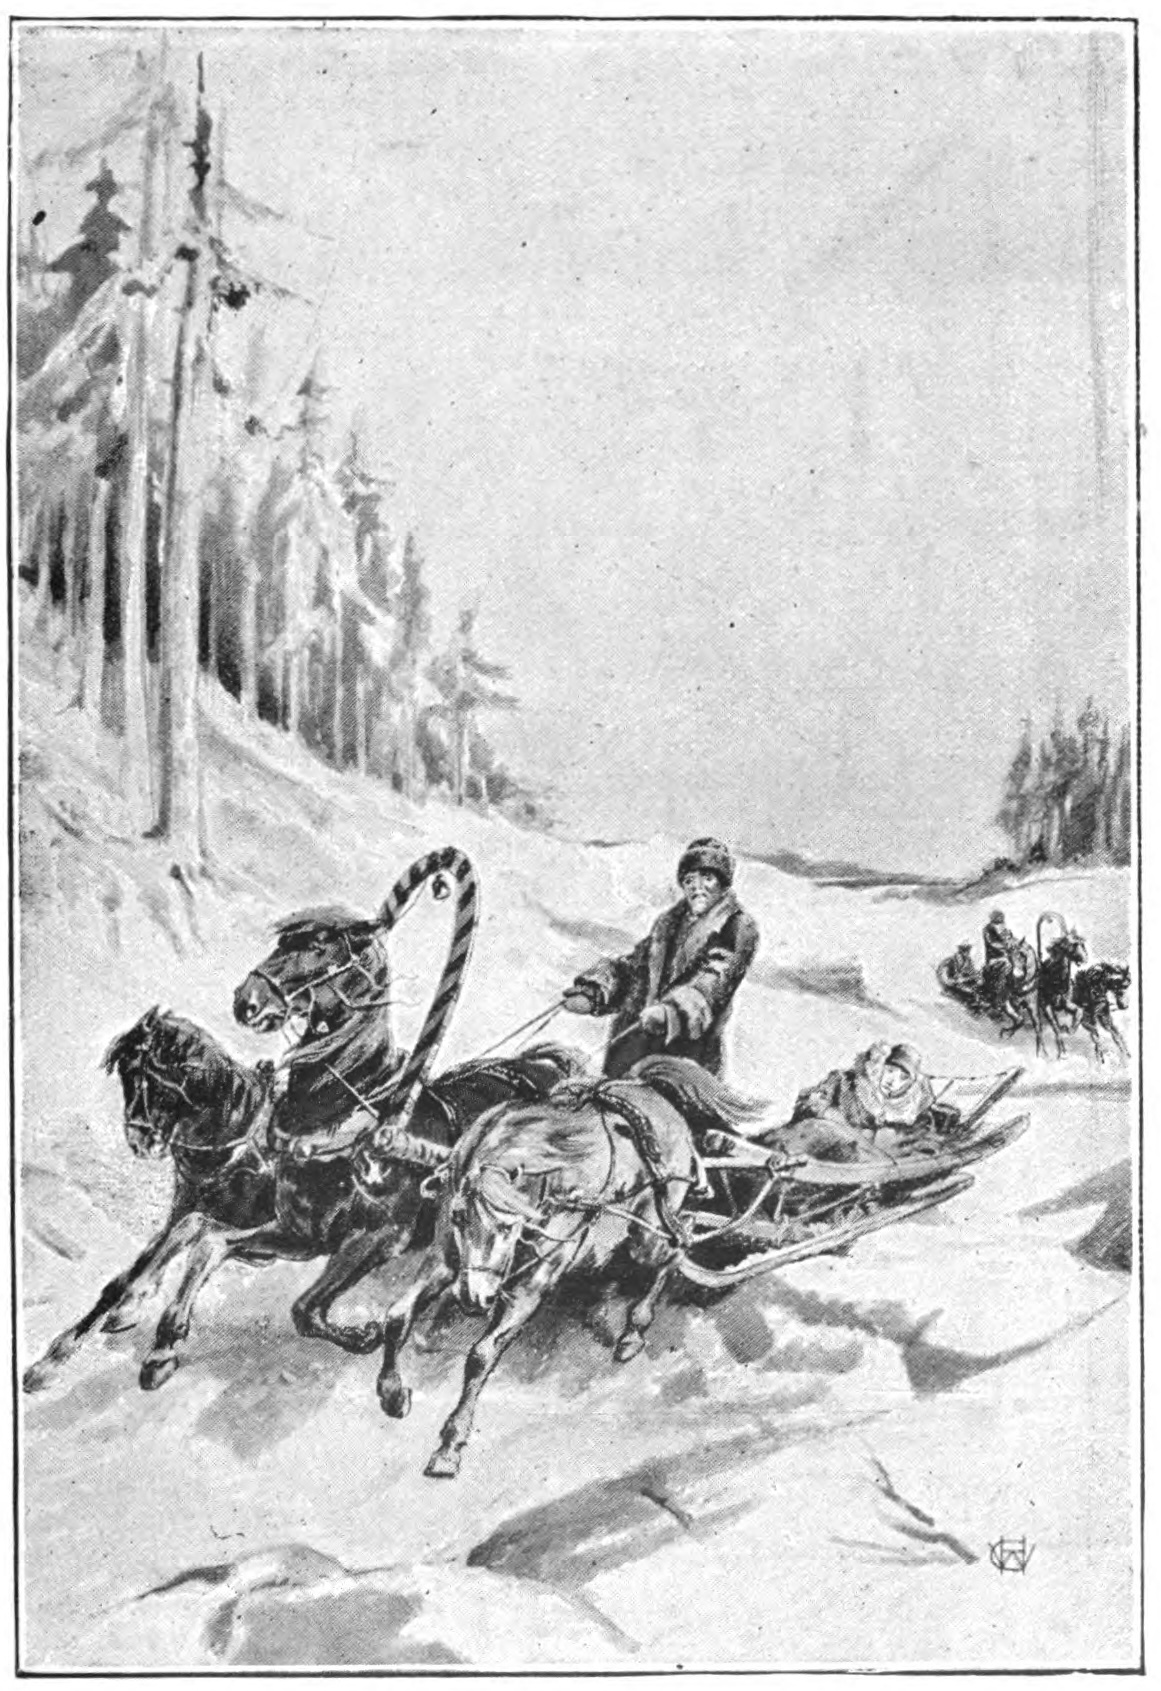 horses pulling a sledge